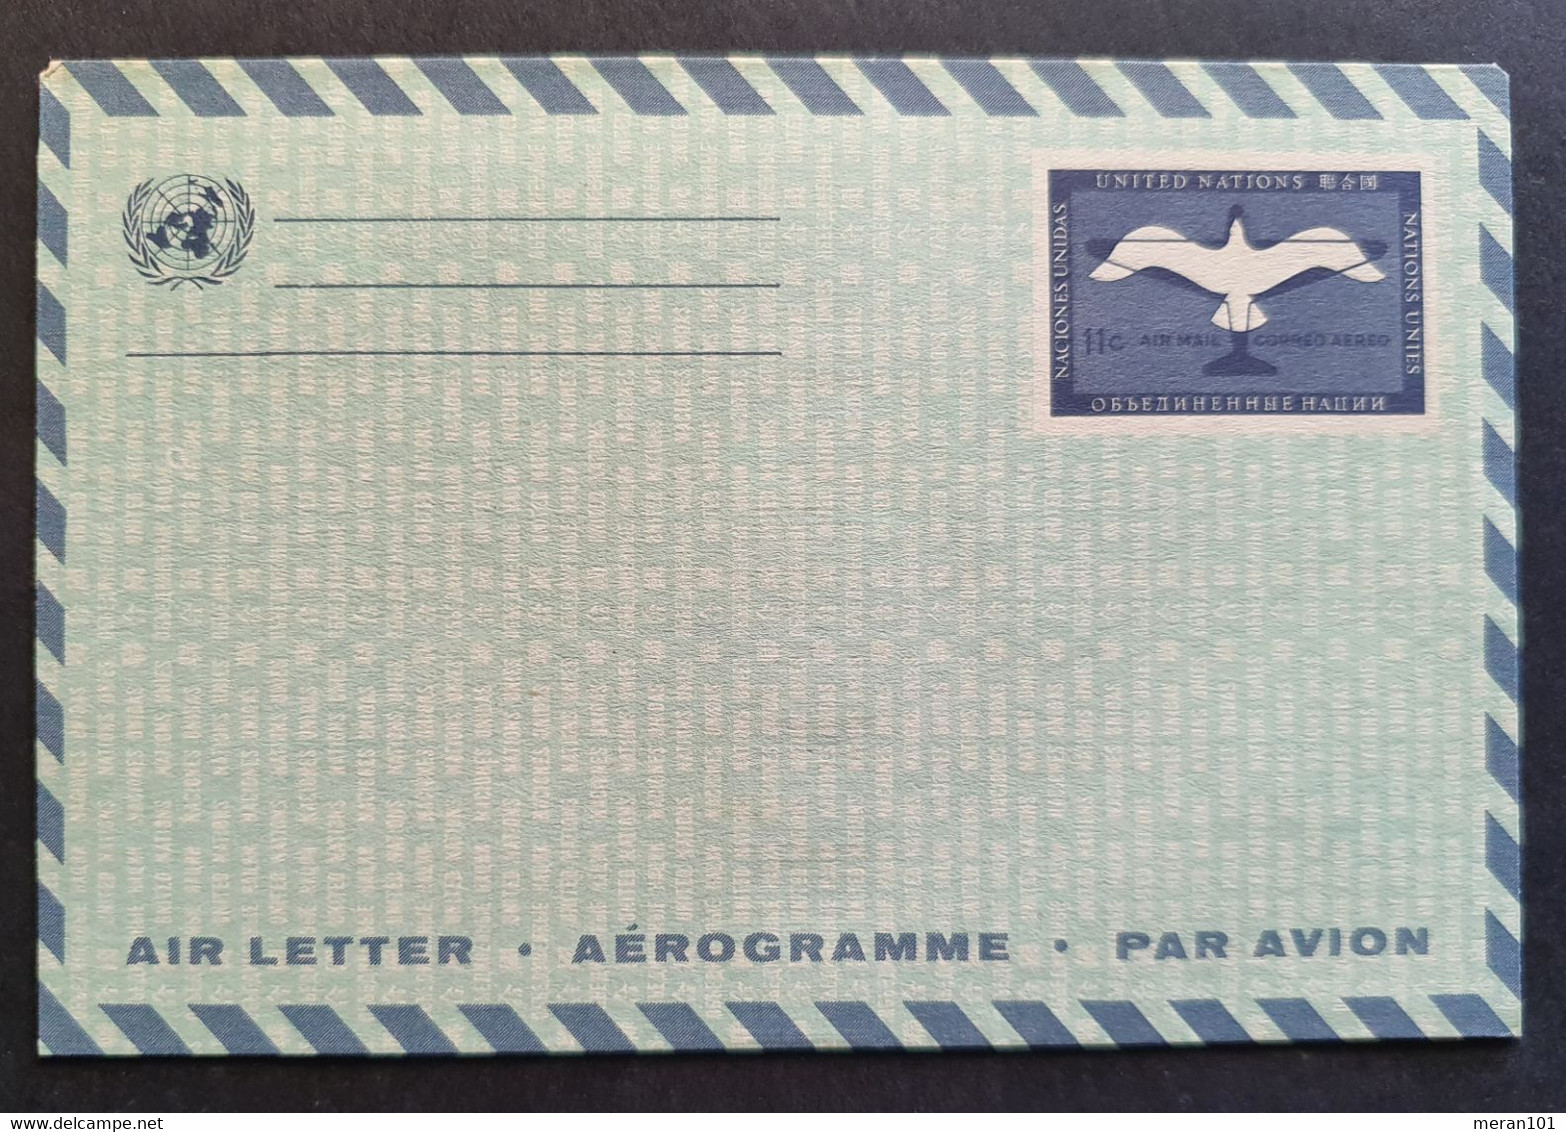 Vereinte Nationen New York, Umschlag Aerogramm Ungebraucht - Luftpost